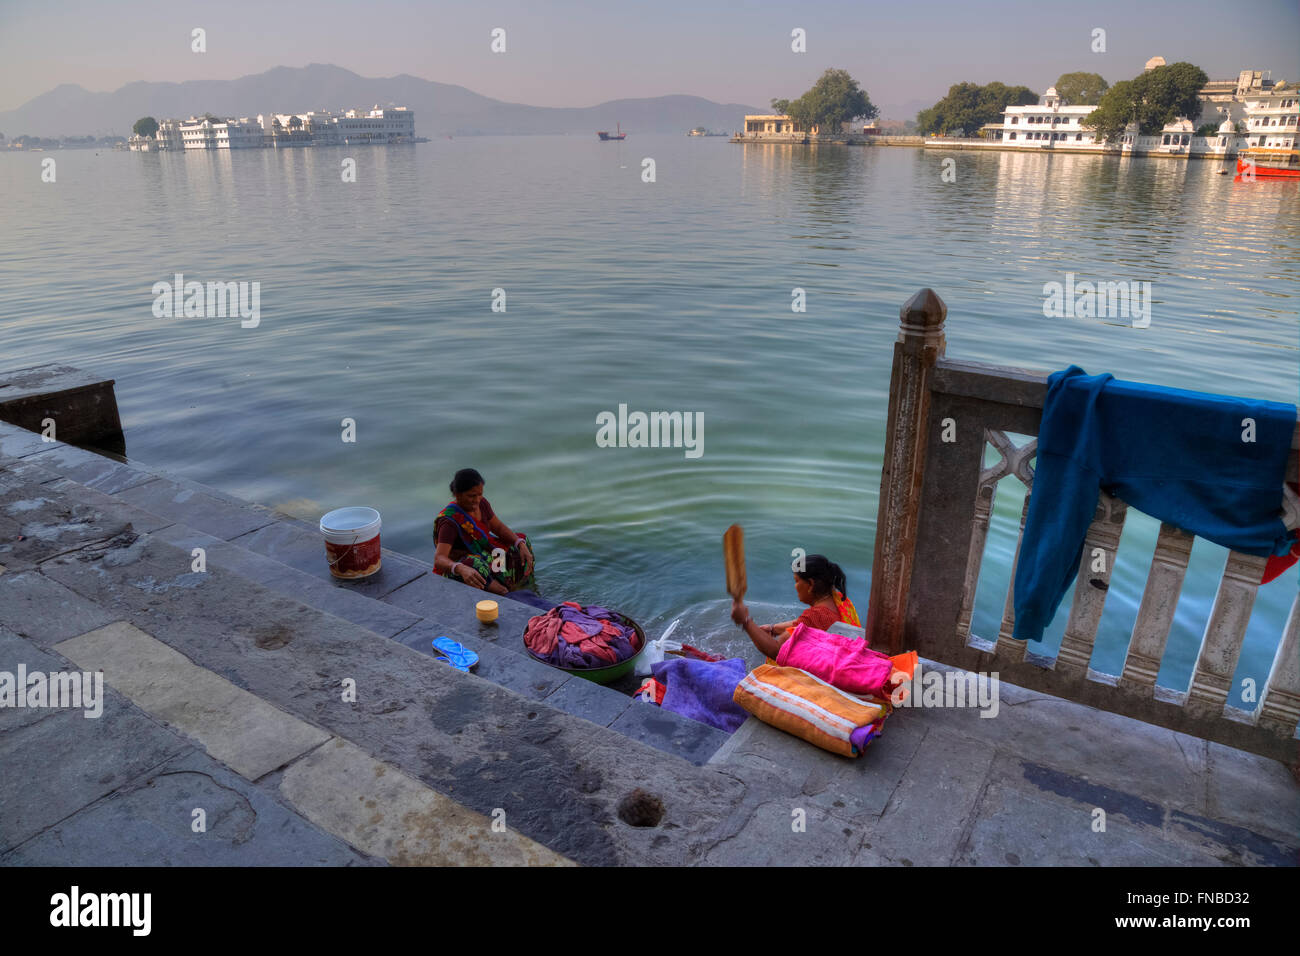 women doing laundry at Lake Palace, Udaipur, Lake Pichola, Rajasthan, India Stock Photo